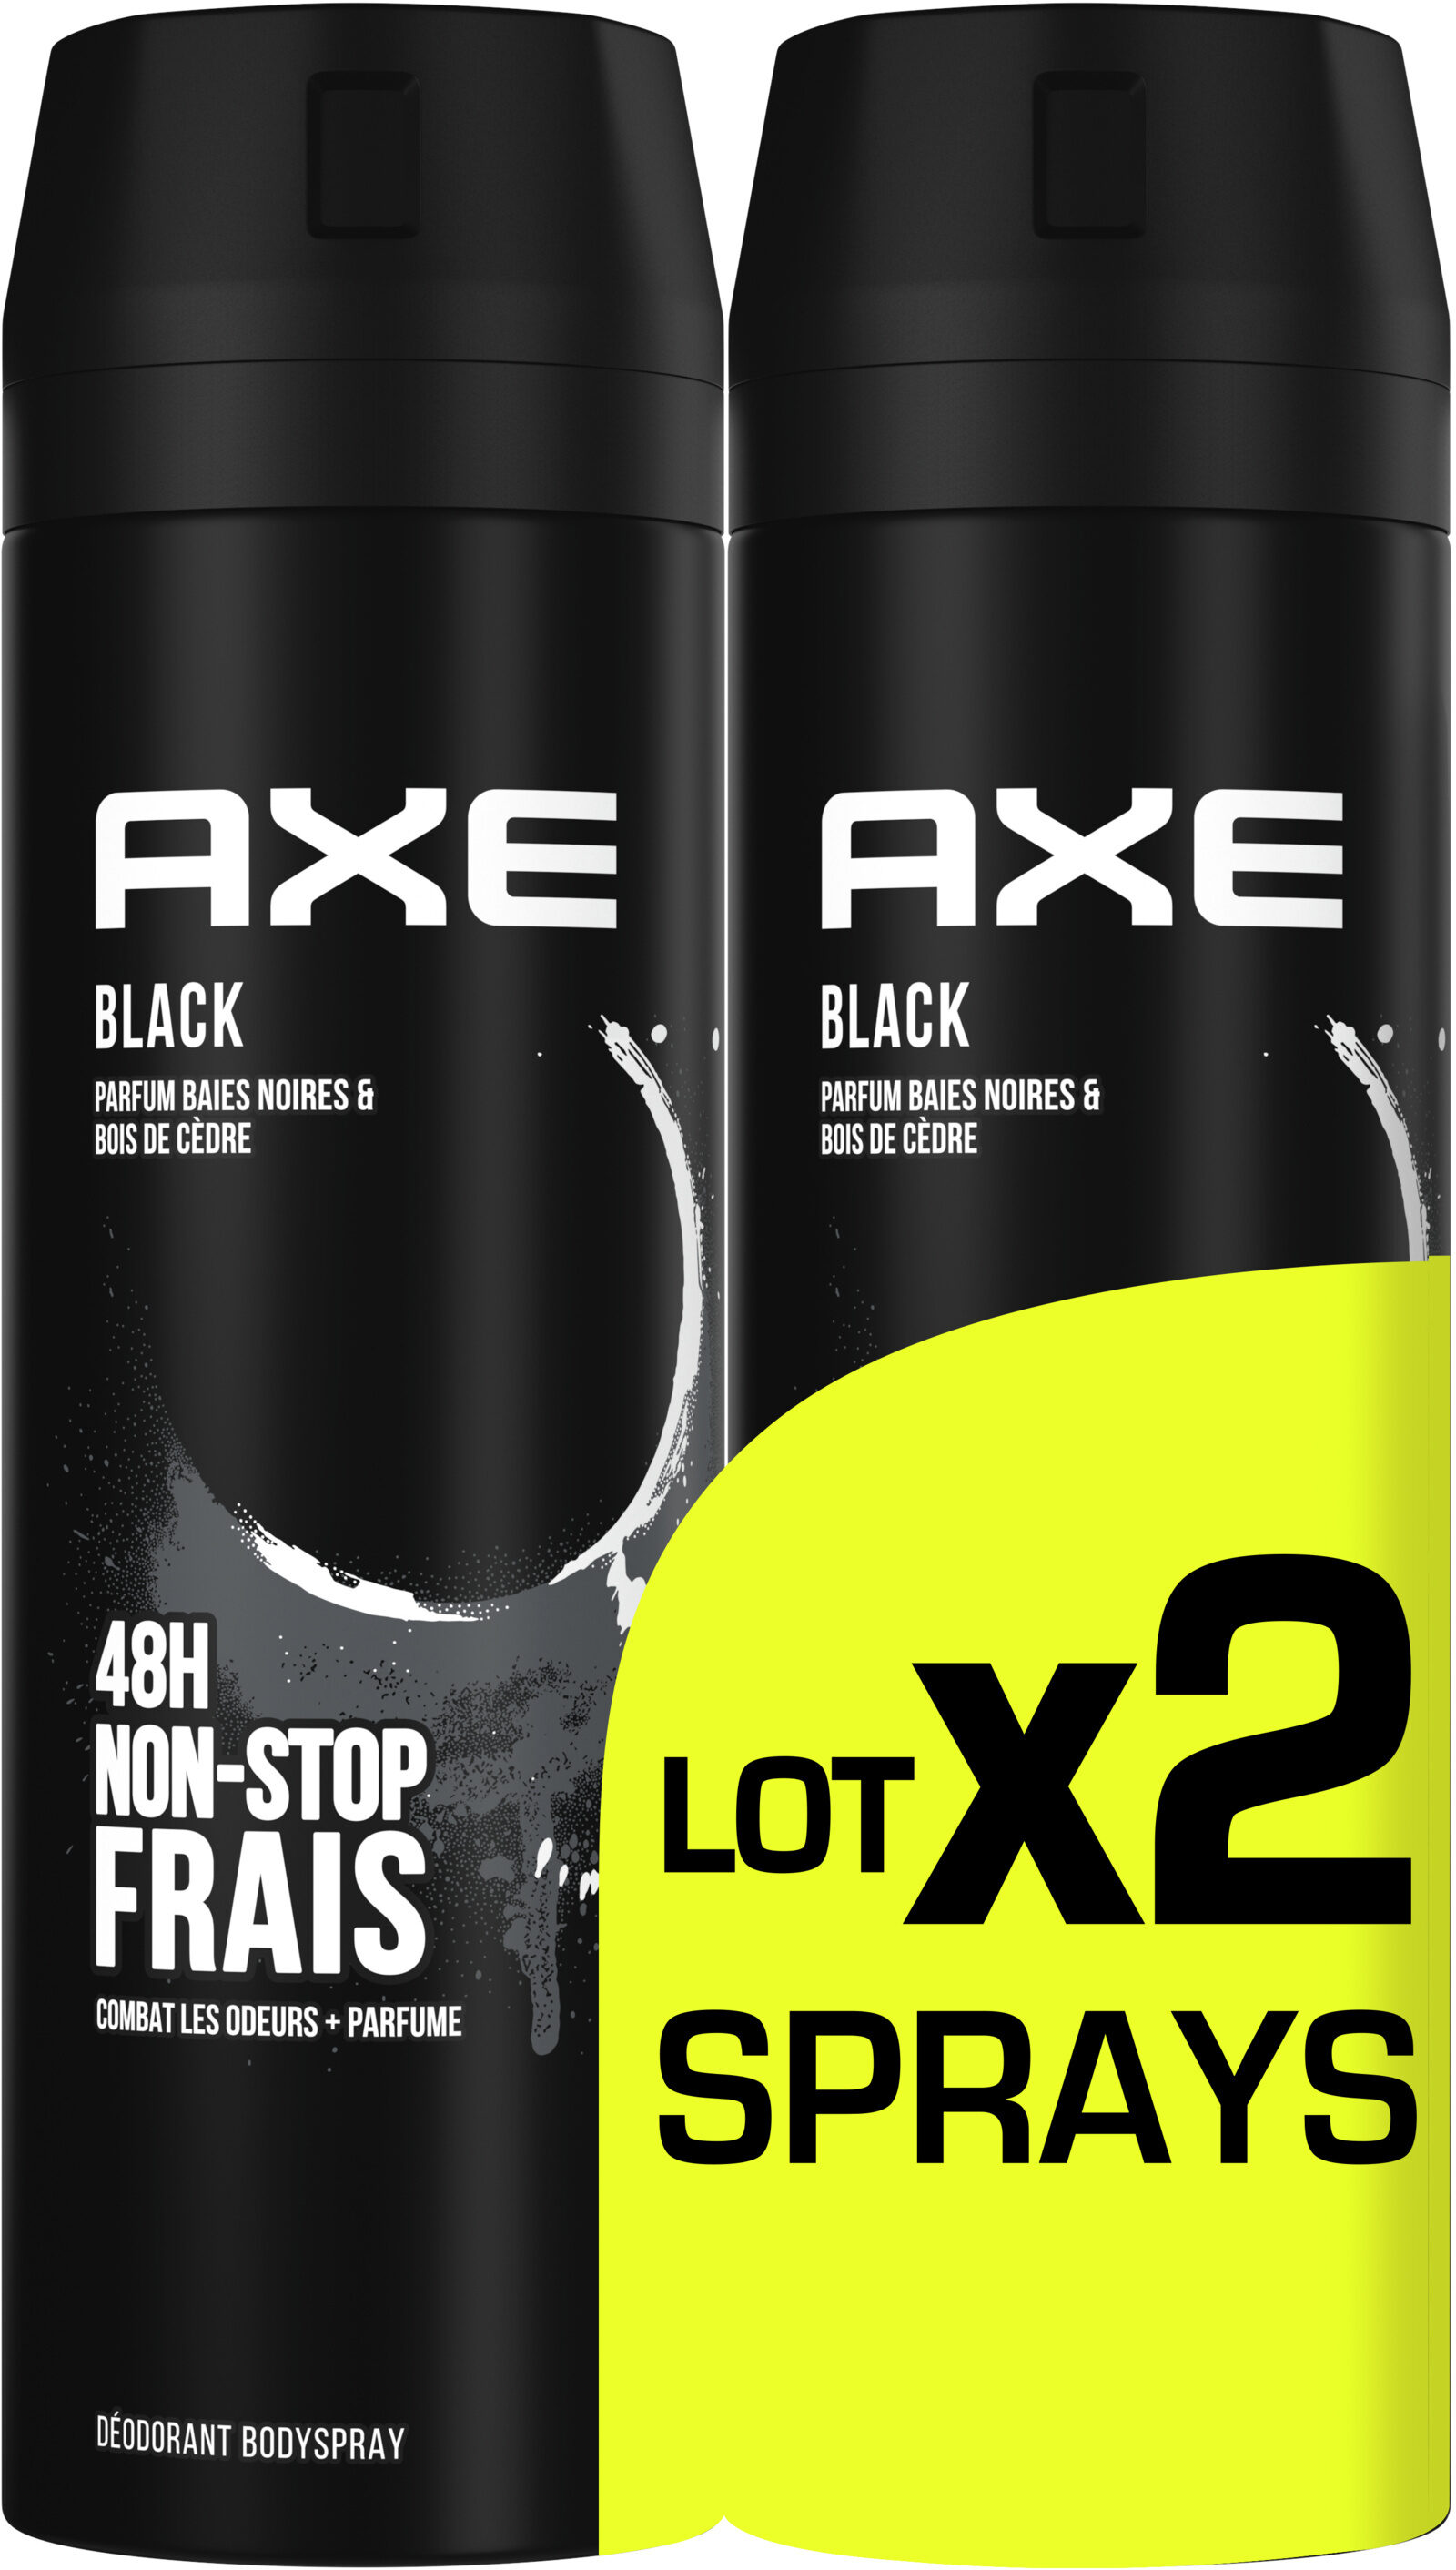 AXE Déodorant Bodyspray Homme Black 48h Non-Stop Frais Lot2x200ml - Produto - fr